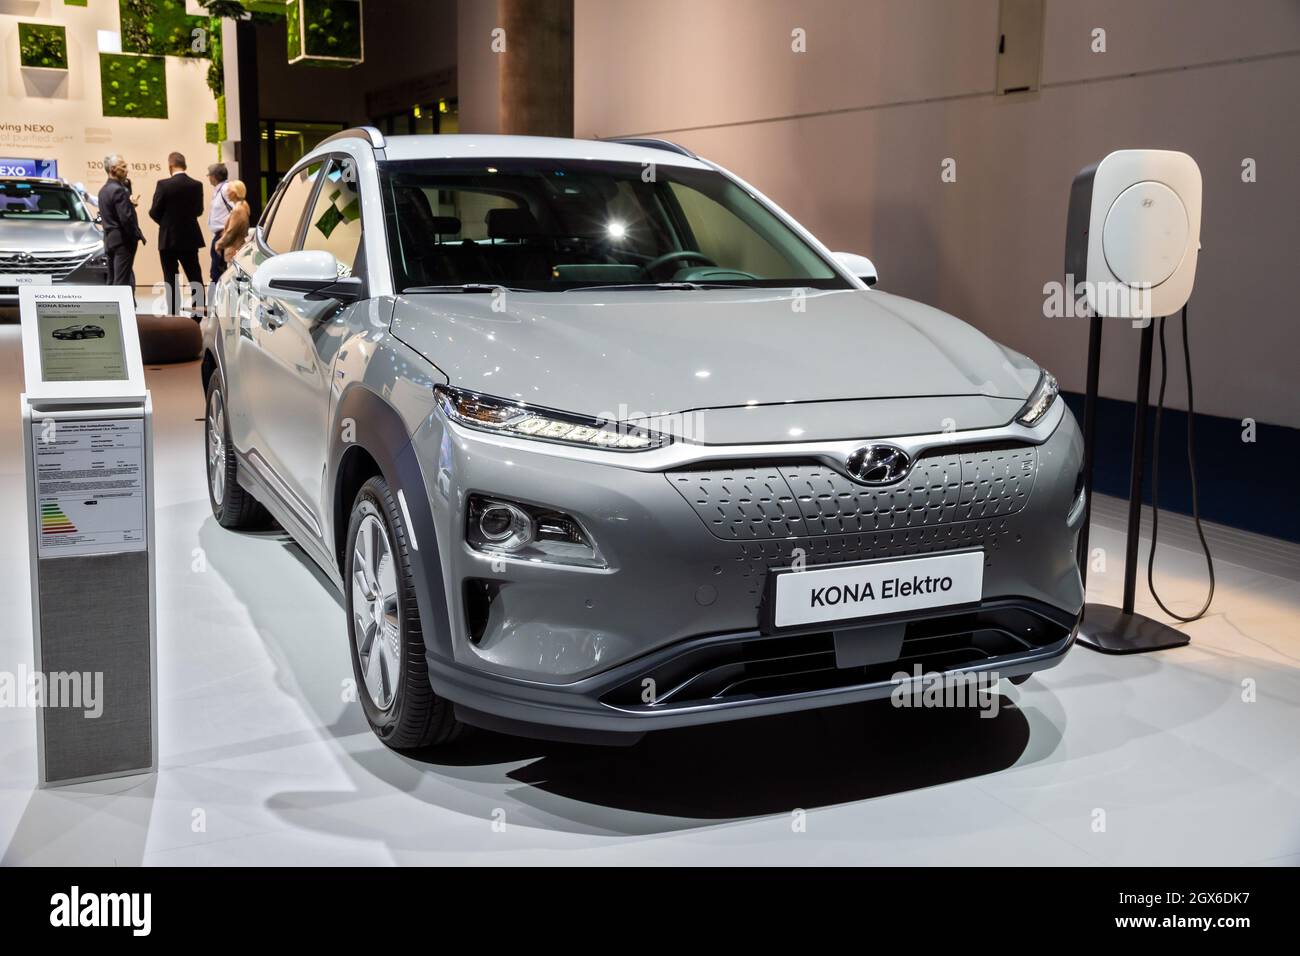 Auto elettrica Hyundai KONA presentata al Salone di Francoforte dell'IAA. Germania - 11 settembre 2019 Foto Stock